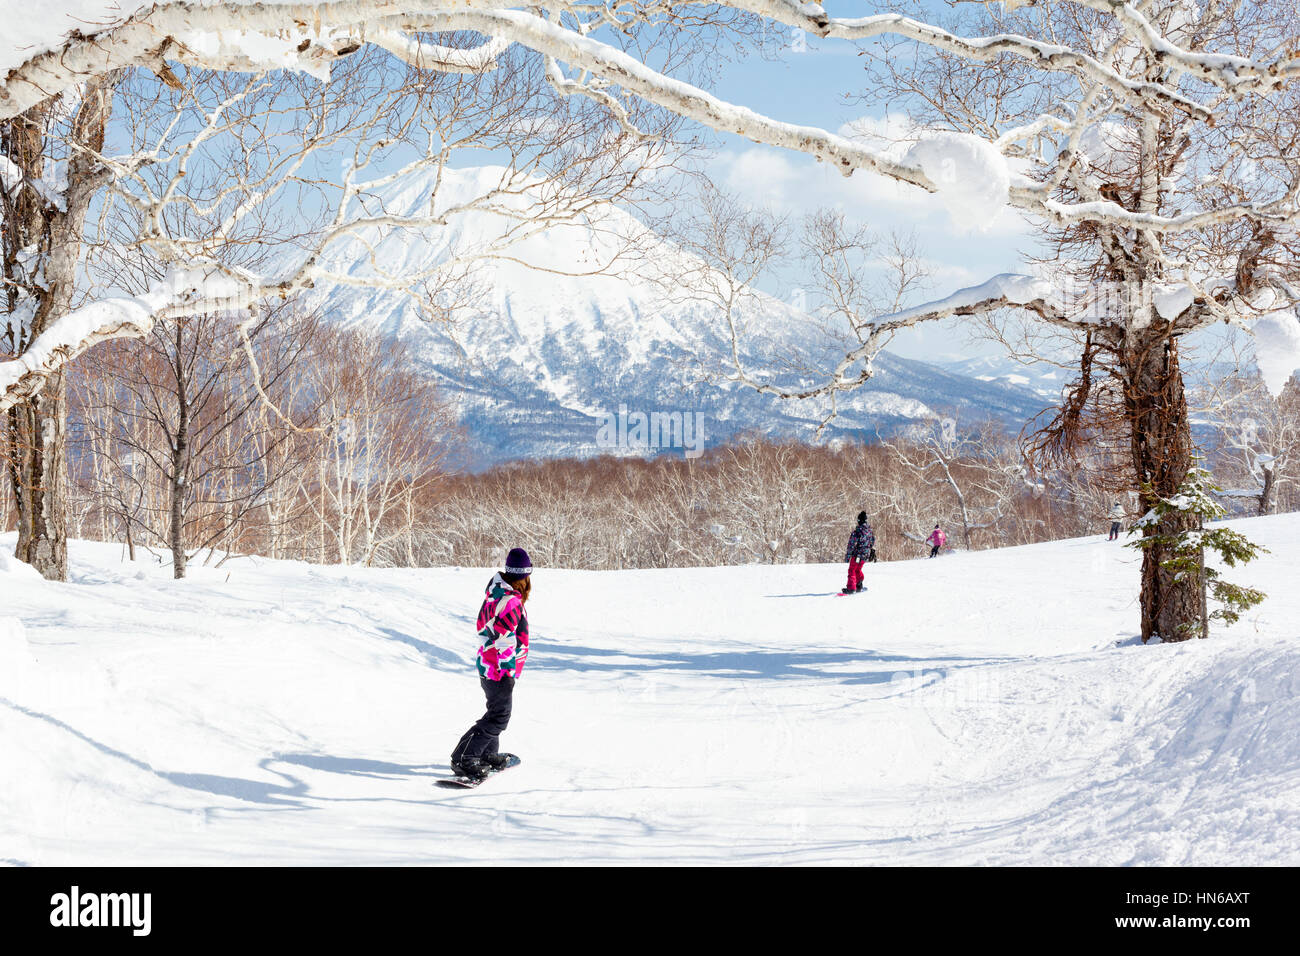 NISEKO, JAPON - 10 mars : vue générale de personnes planche sur une piste dans la station de ski Niseko Grand Hirafu, Hokkaido, Japon le 10 Ma Banque D'Images